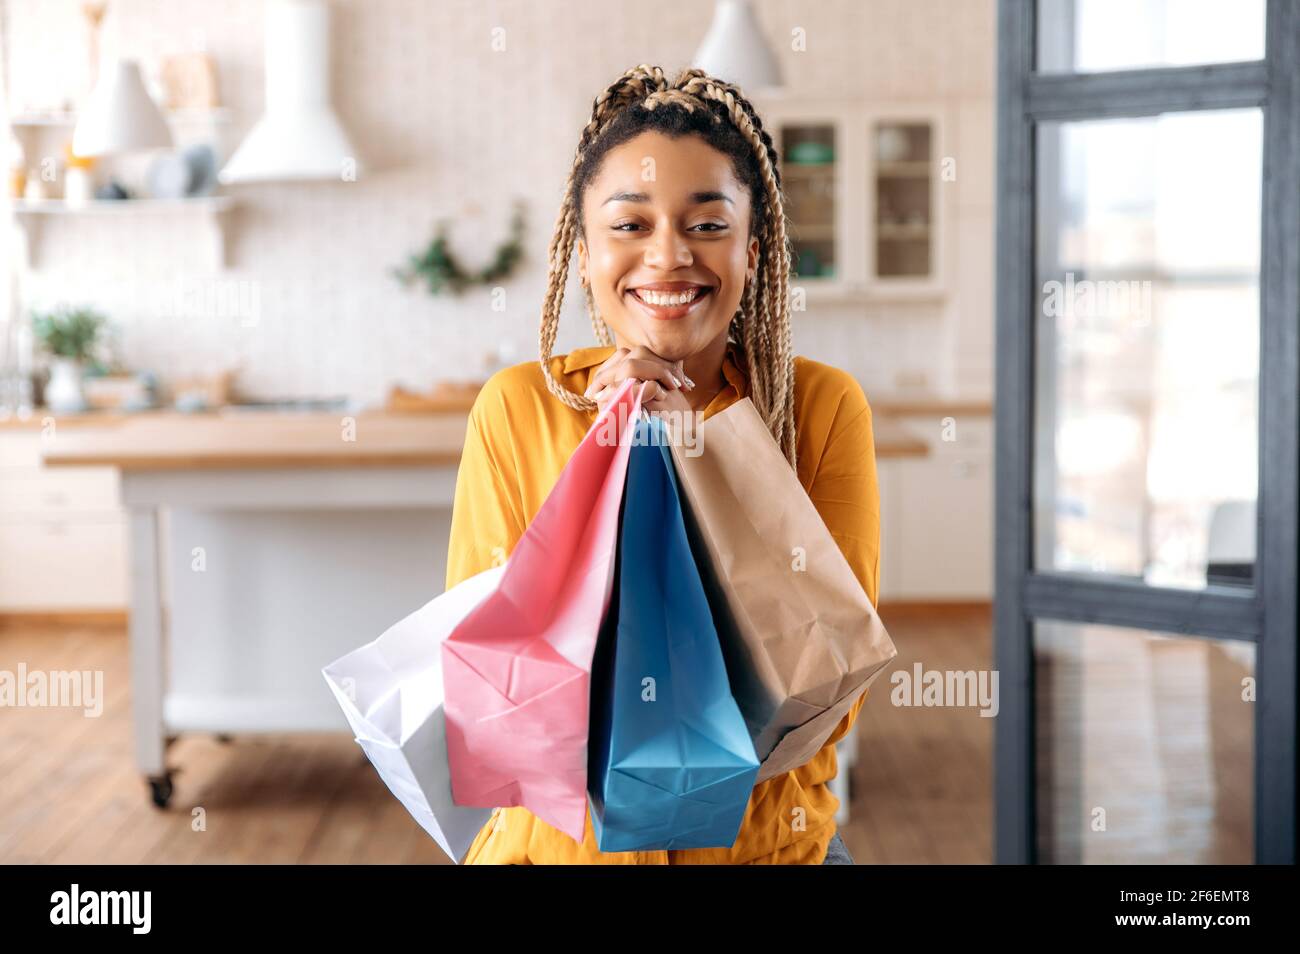 Une jeune femme afro-américaine heureuse avec des dreadlocks est assise dans le salon, se réjouit des choses achetées, presse des paquets de papier pour elle-même, regarde la caméra, sourit Banque D'Images